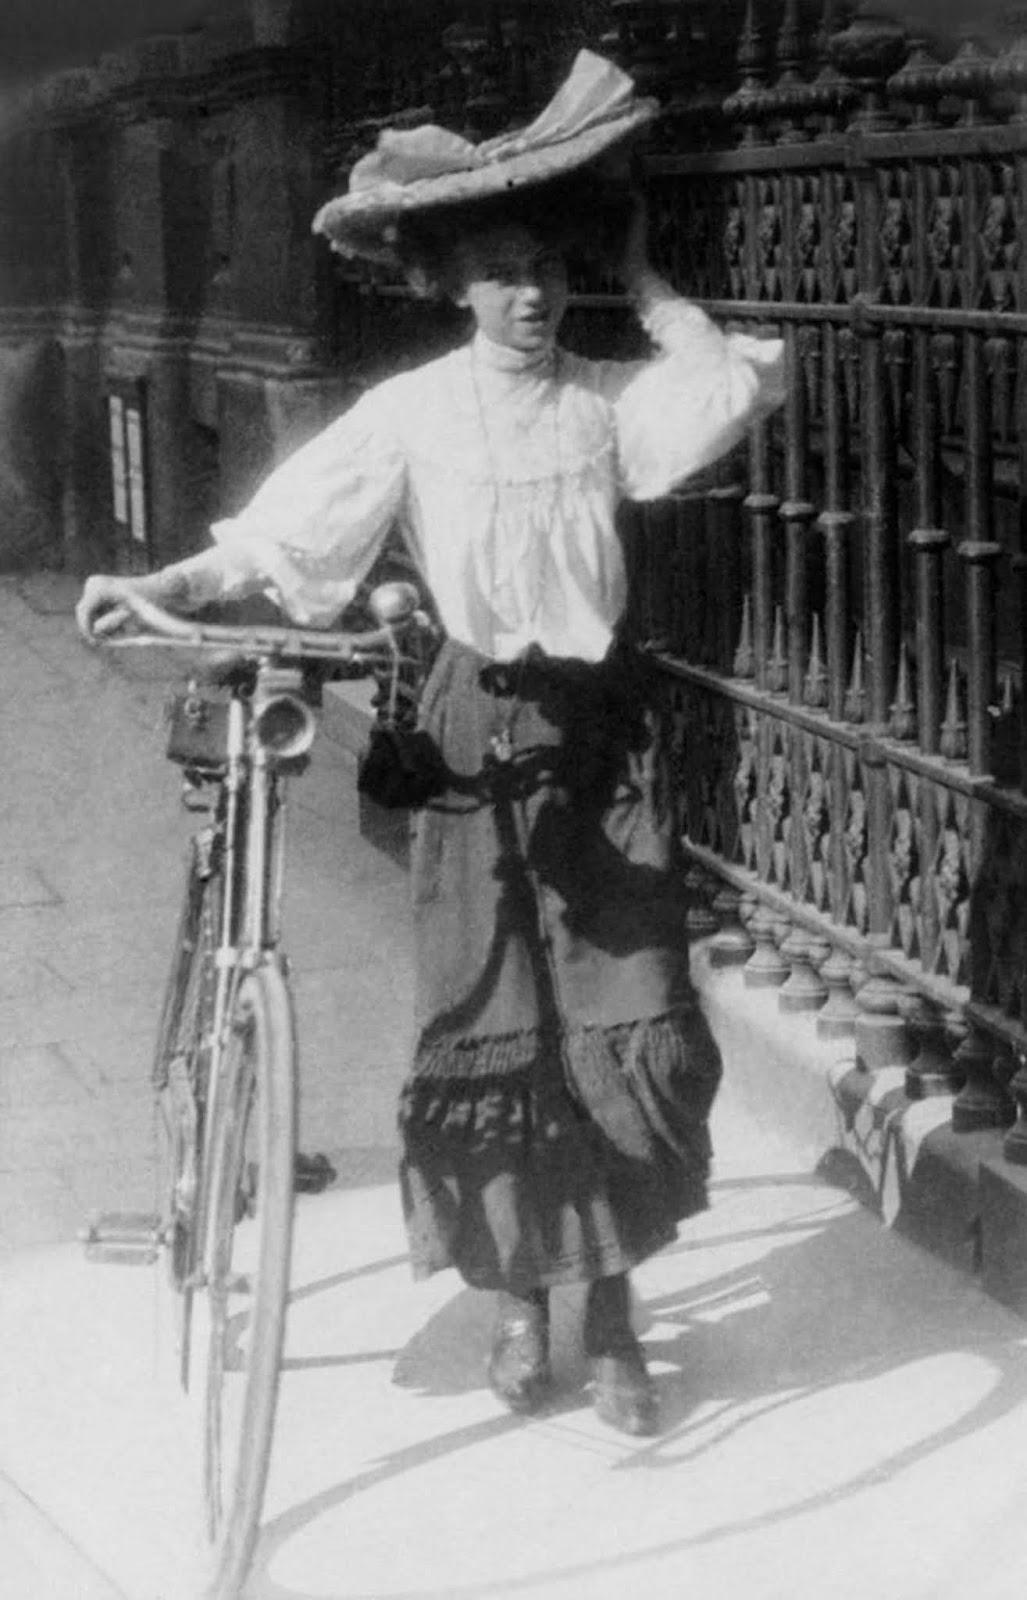 London street style pendant la belle époque, 1905-1908